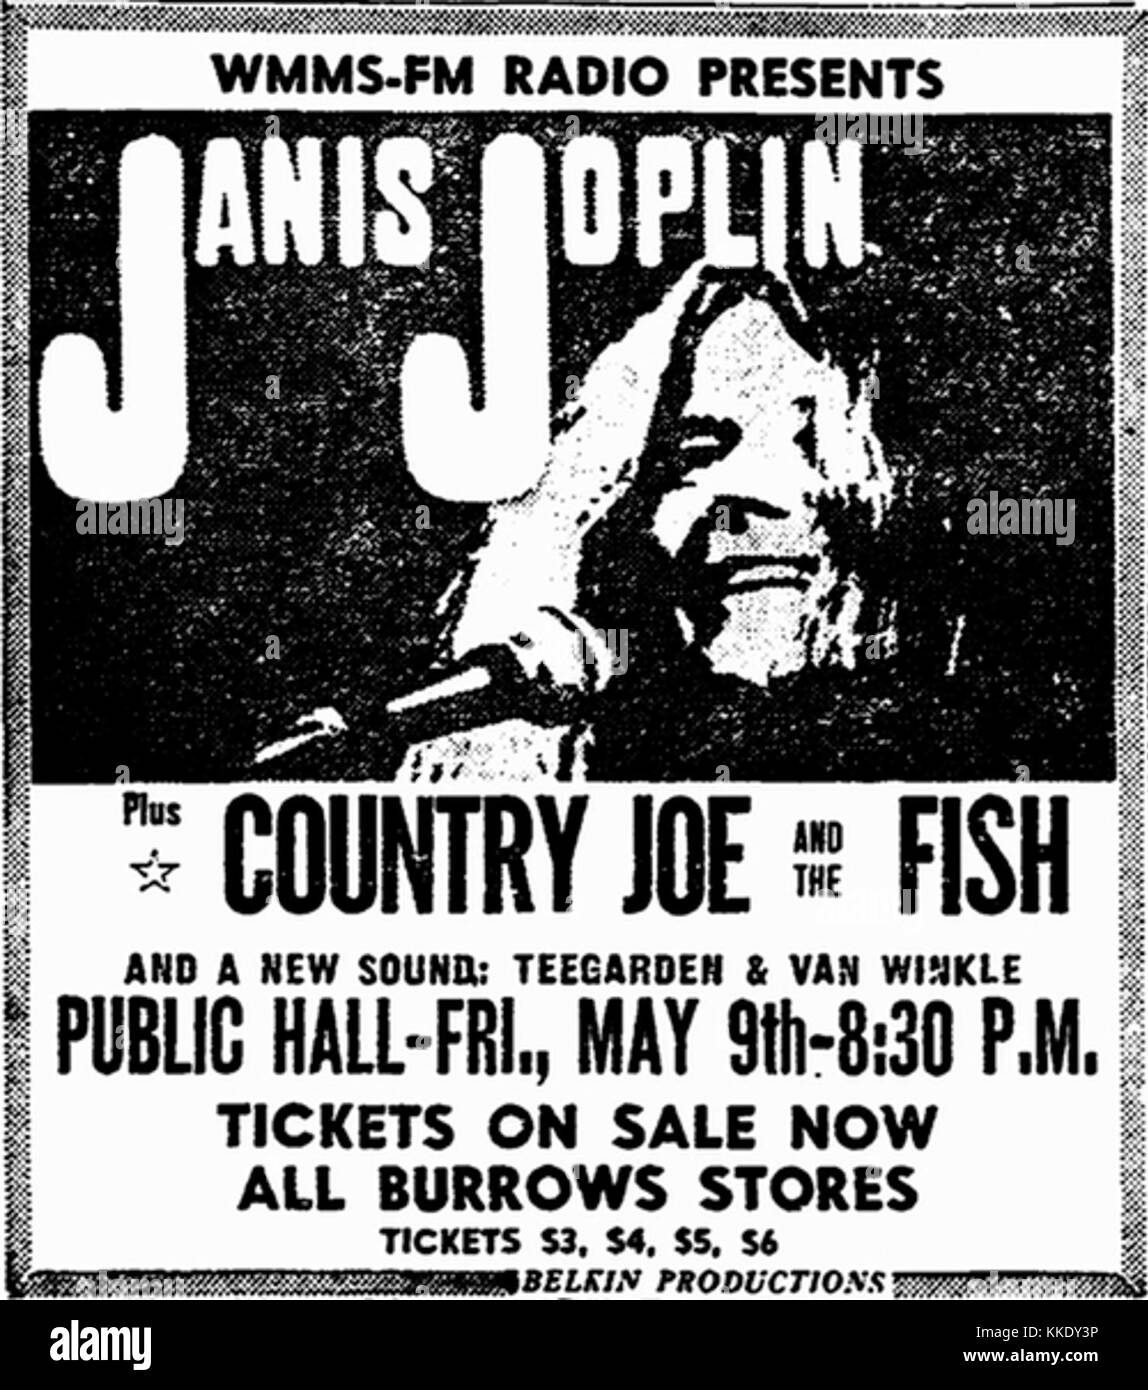 WMMS Presents Janis Joplin - 1969 print ad Stock Photo